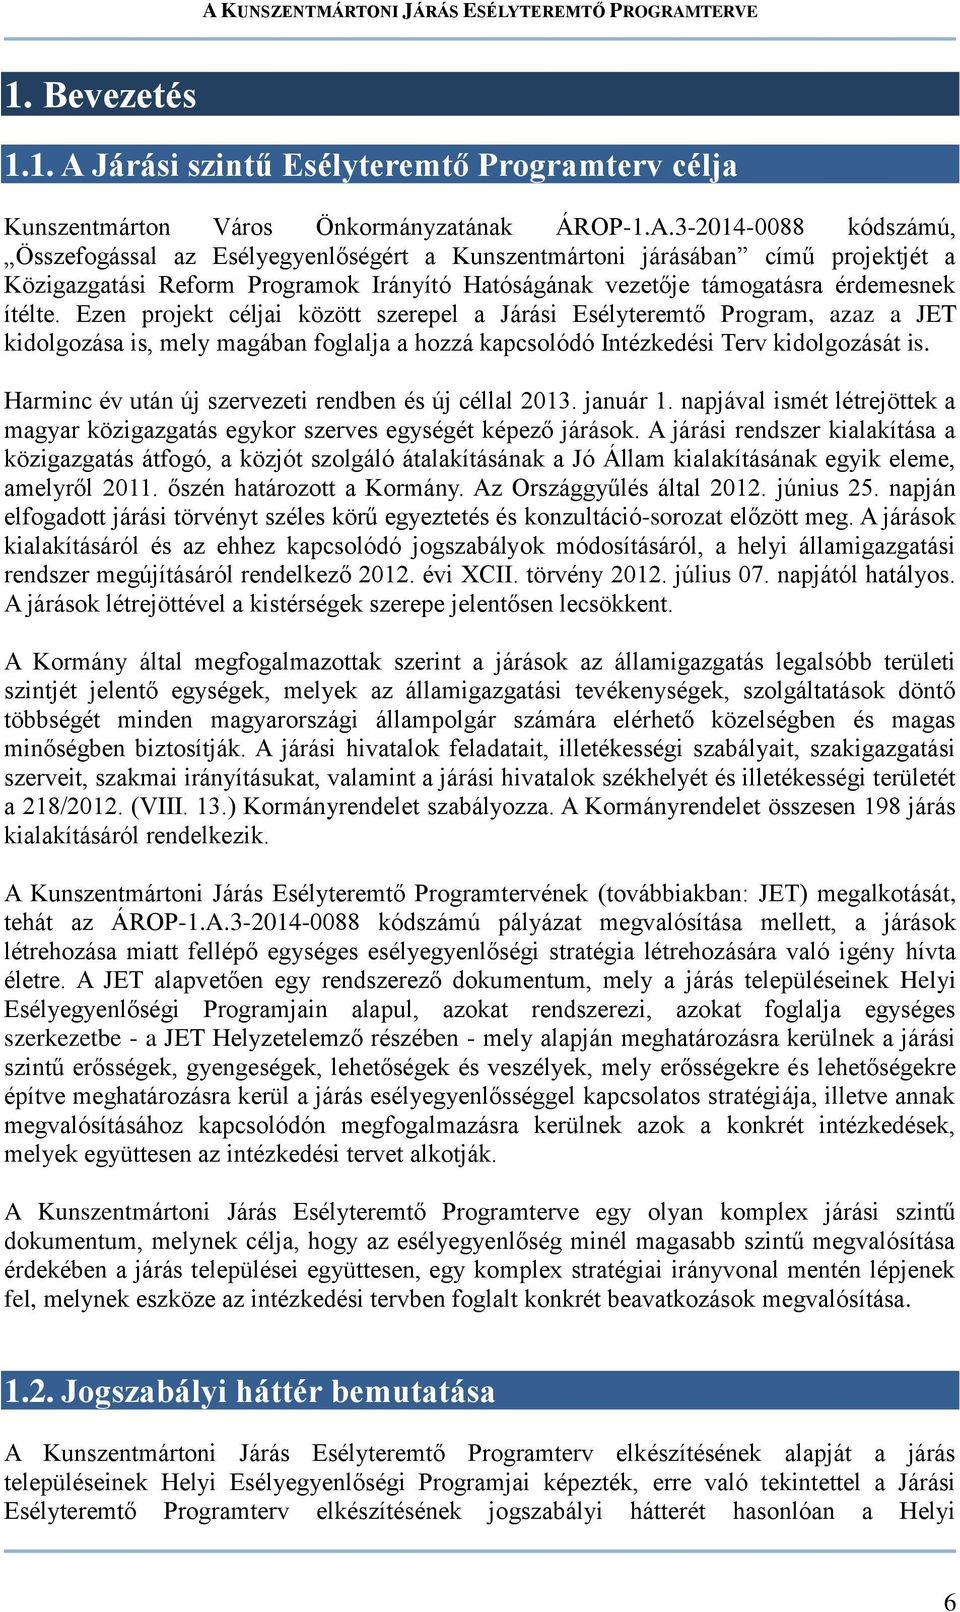 3-2014-0088 kódszámú, Összefogással az Esélyegyenlőségért a Kunszentmártoni járásában című projektjét a Közigazgatási Reform Programok Irányító Hatóságának vezetője támogatásra érdemesnek ítélte.